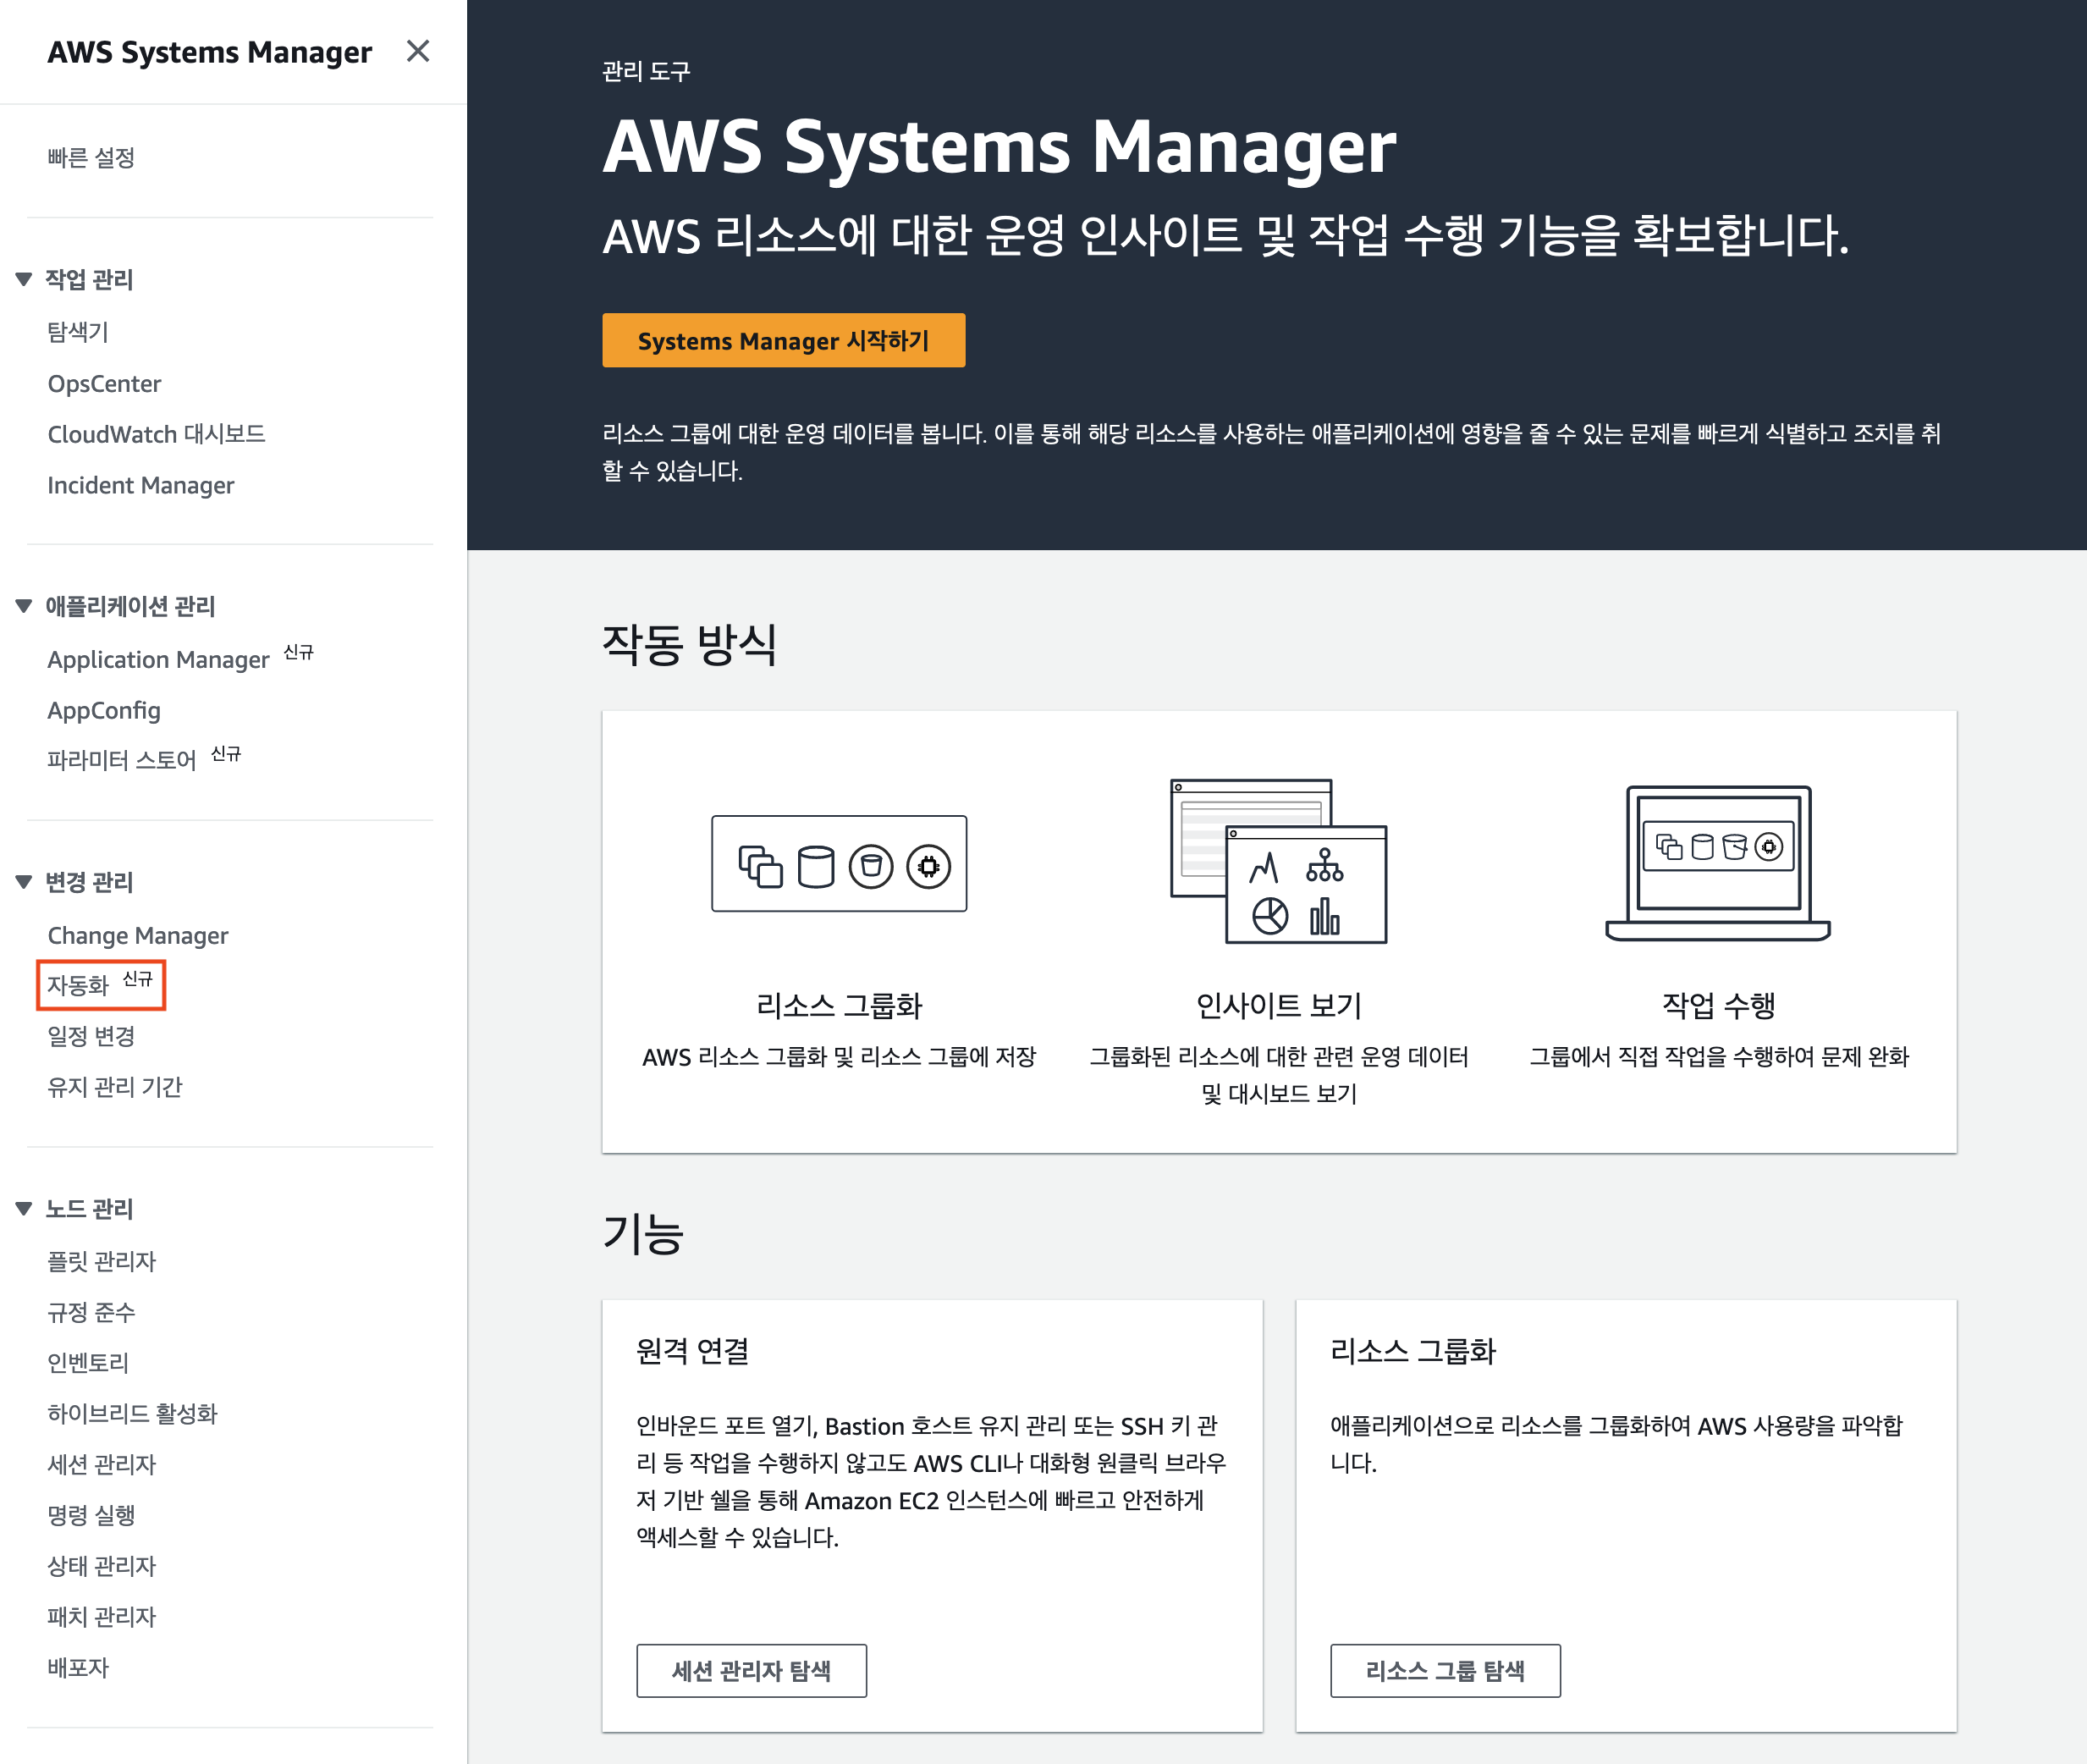 그림 2: AWS systems Manager 콘솔의 왼편에서 '자동화 (Automation)' 메뉴를 선택